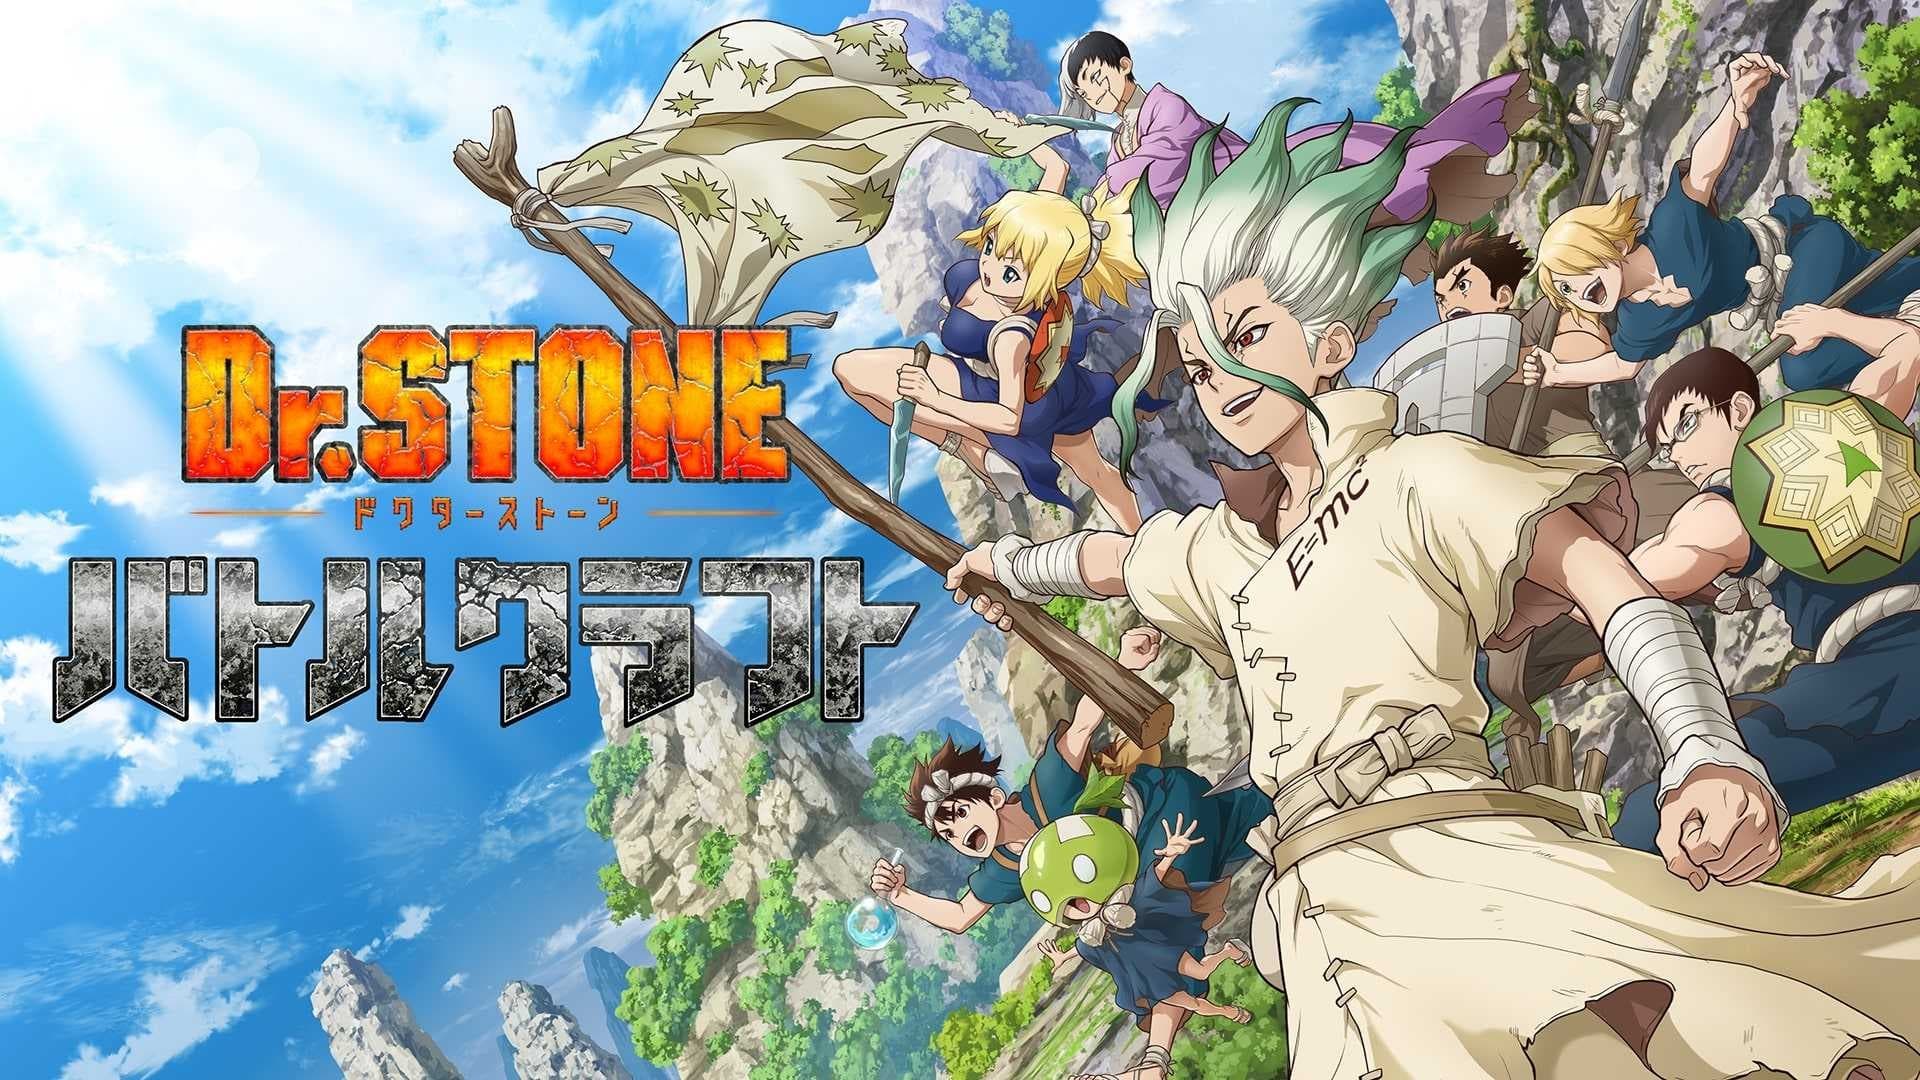 Dr Stone season 4 renewal status, predicted release date, manga pacing